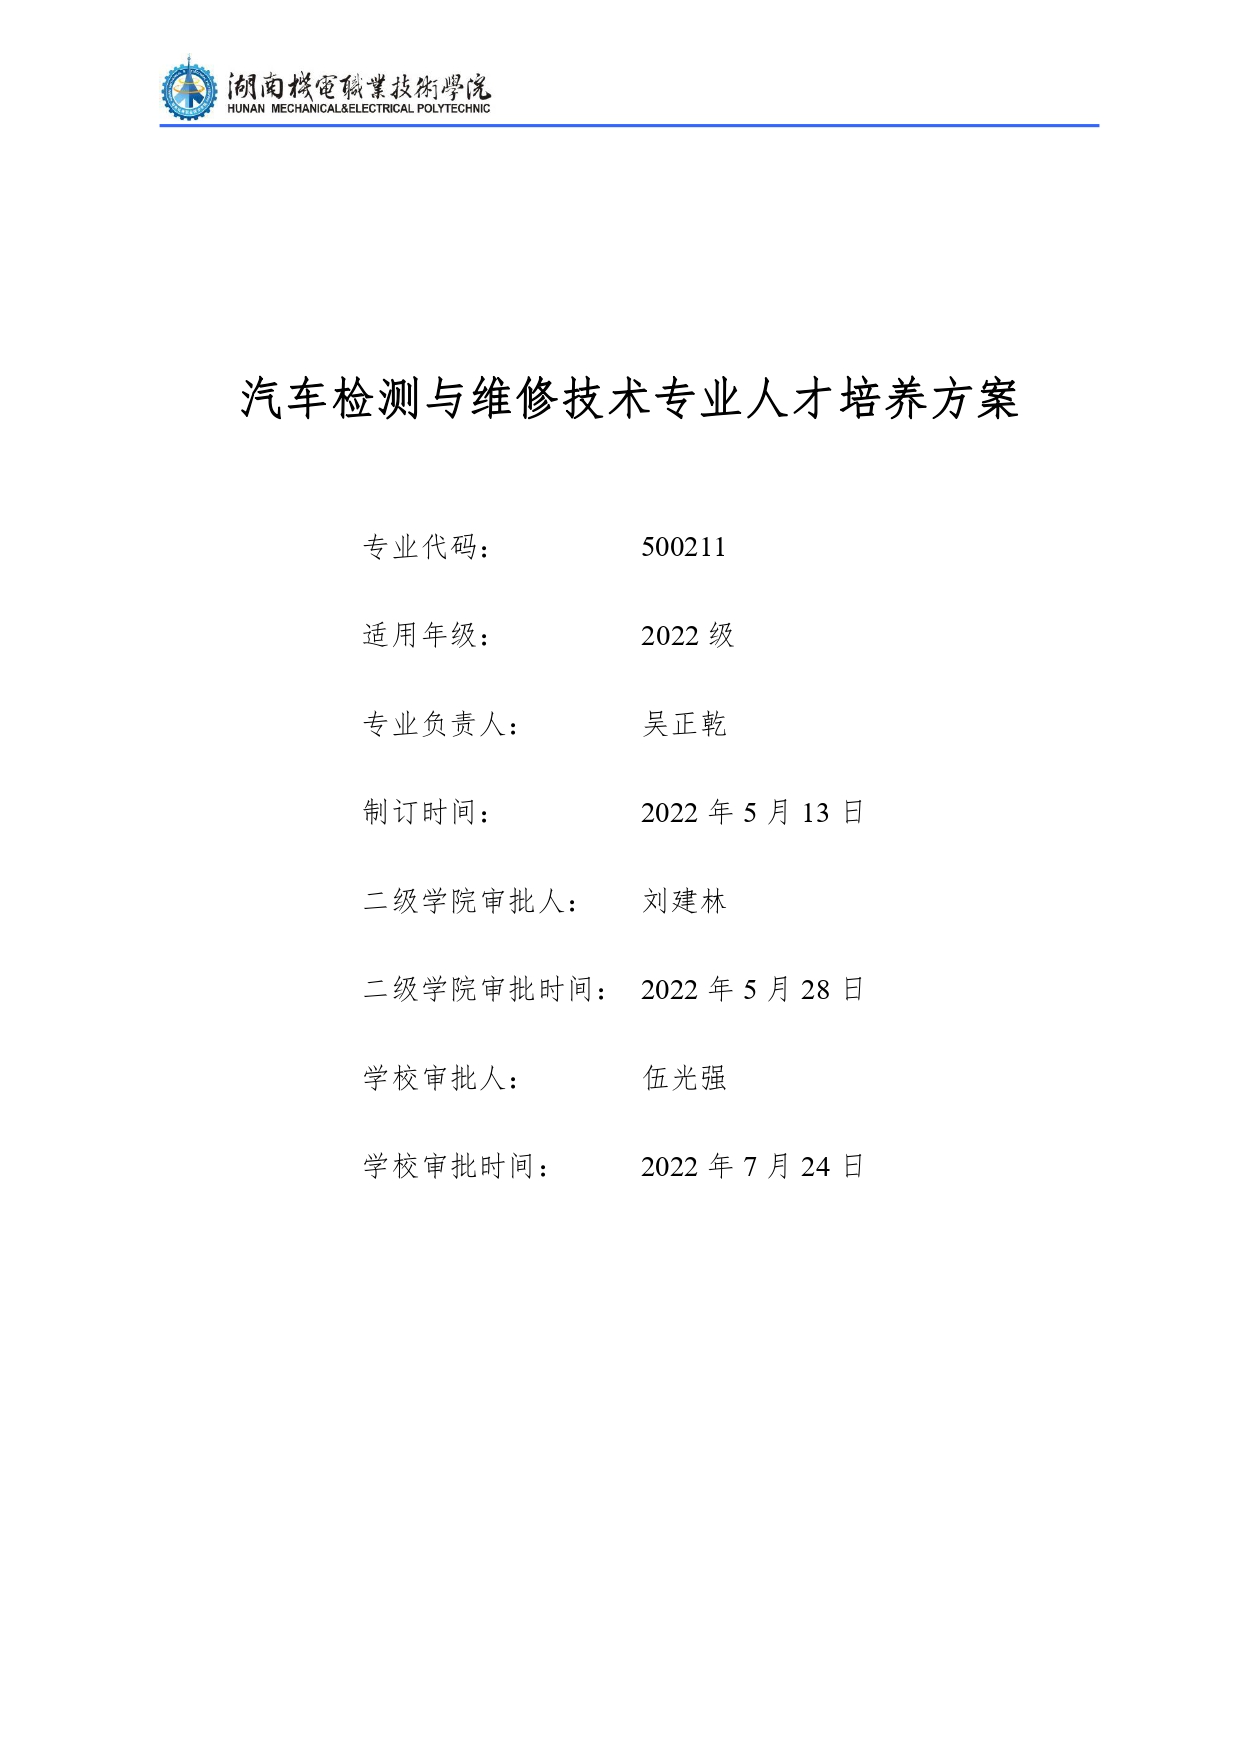 湖南机电职业技术学院2022级汽车检测与维修技术专业人才培养方案V10.0_page-0001.jpg